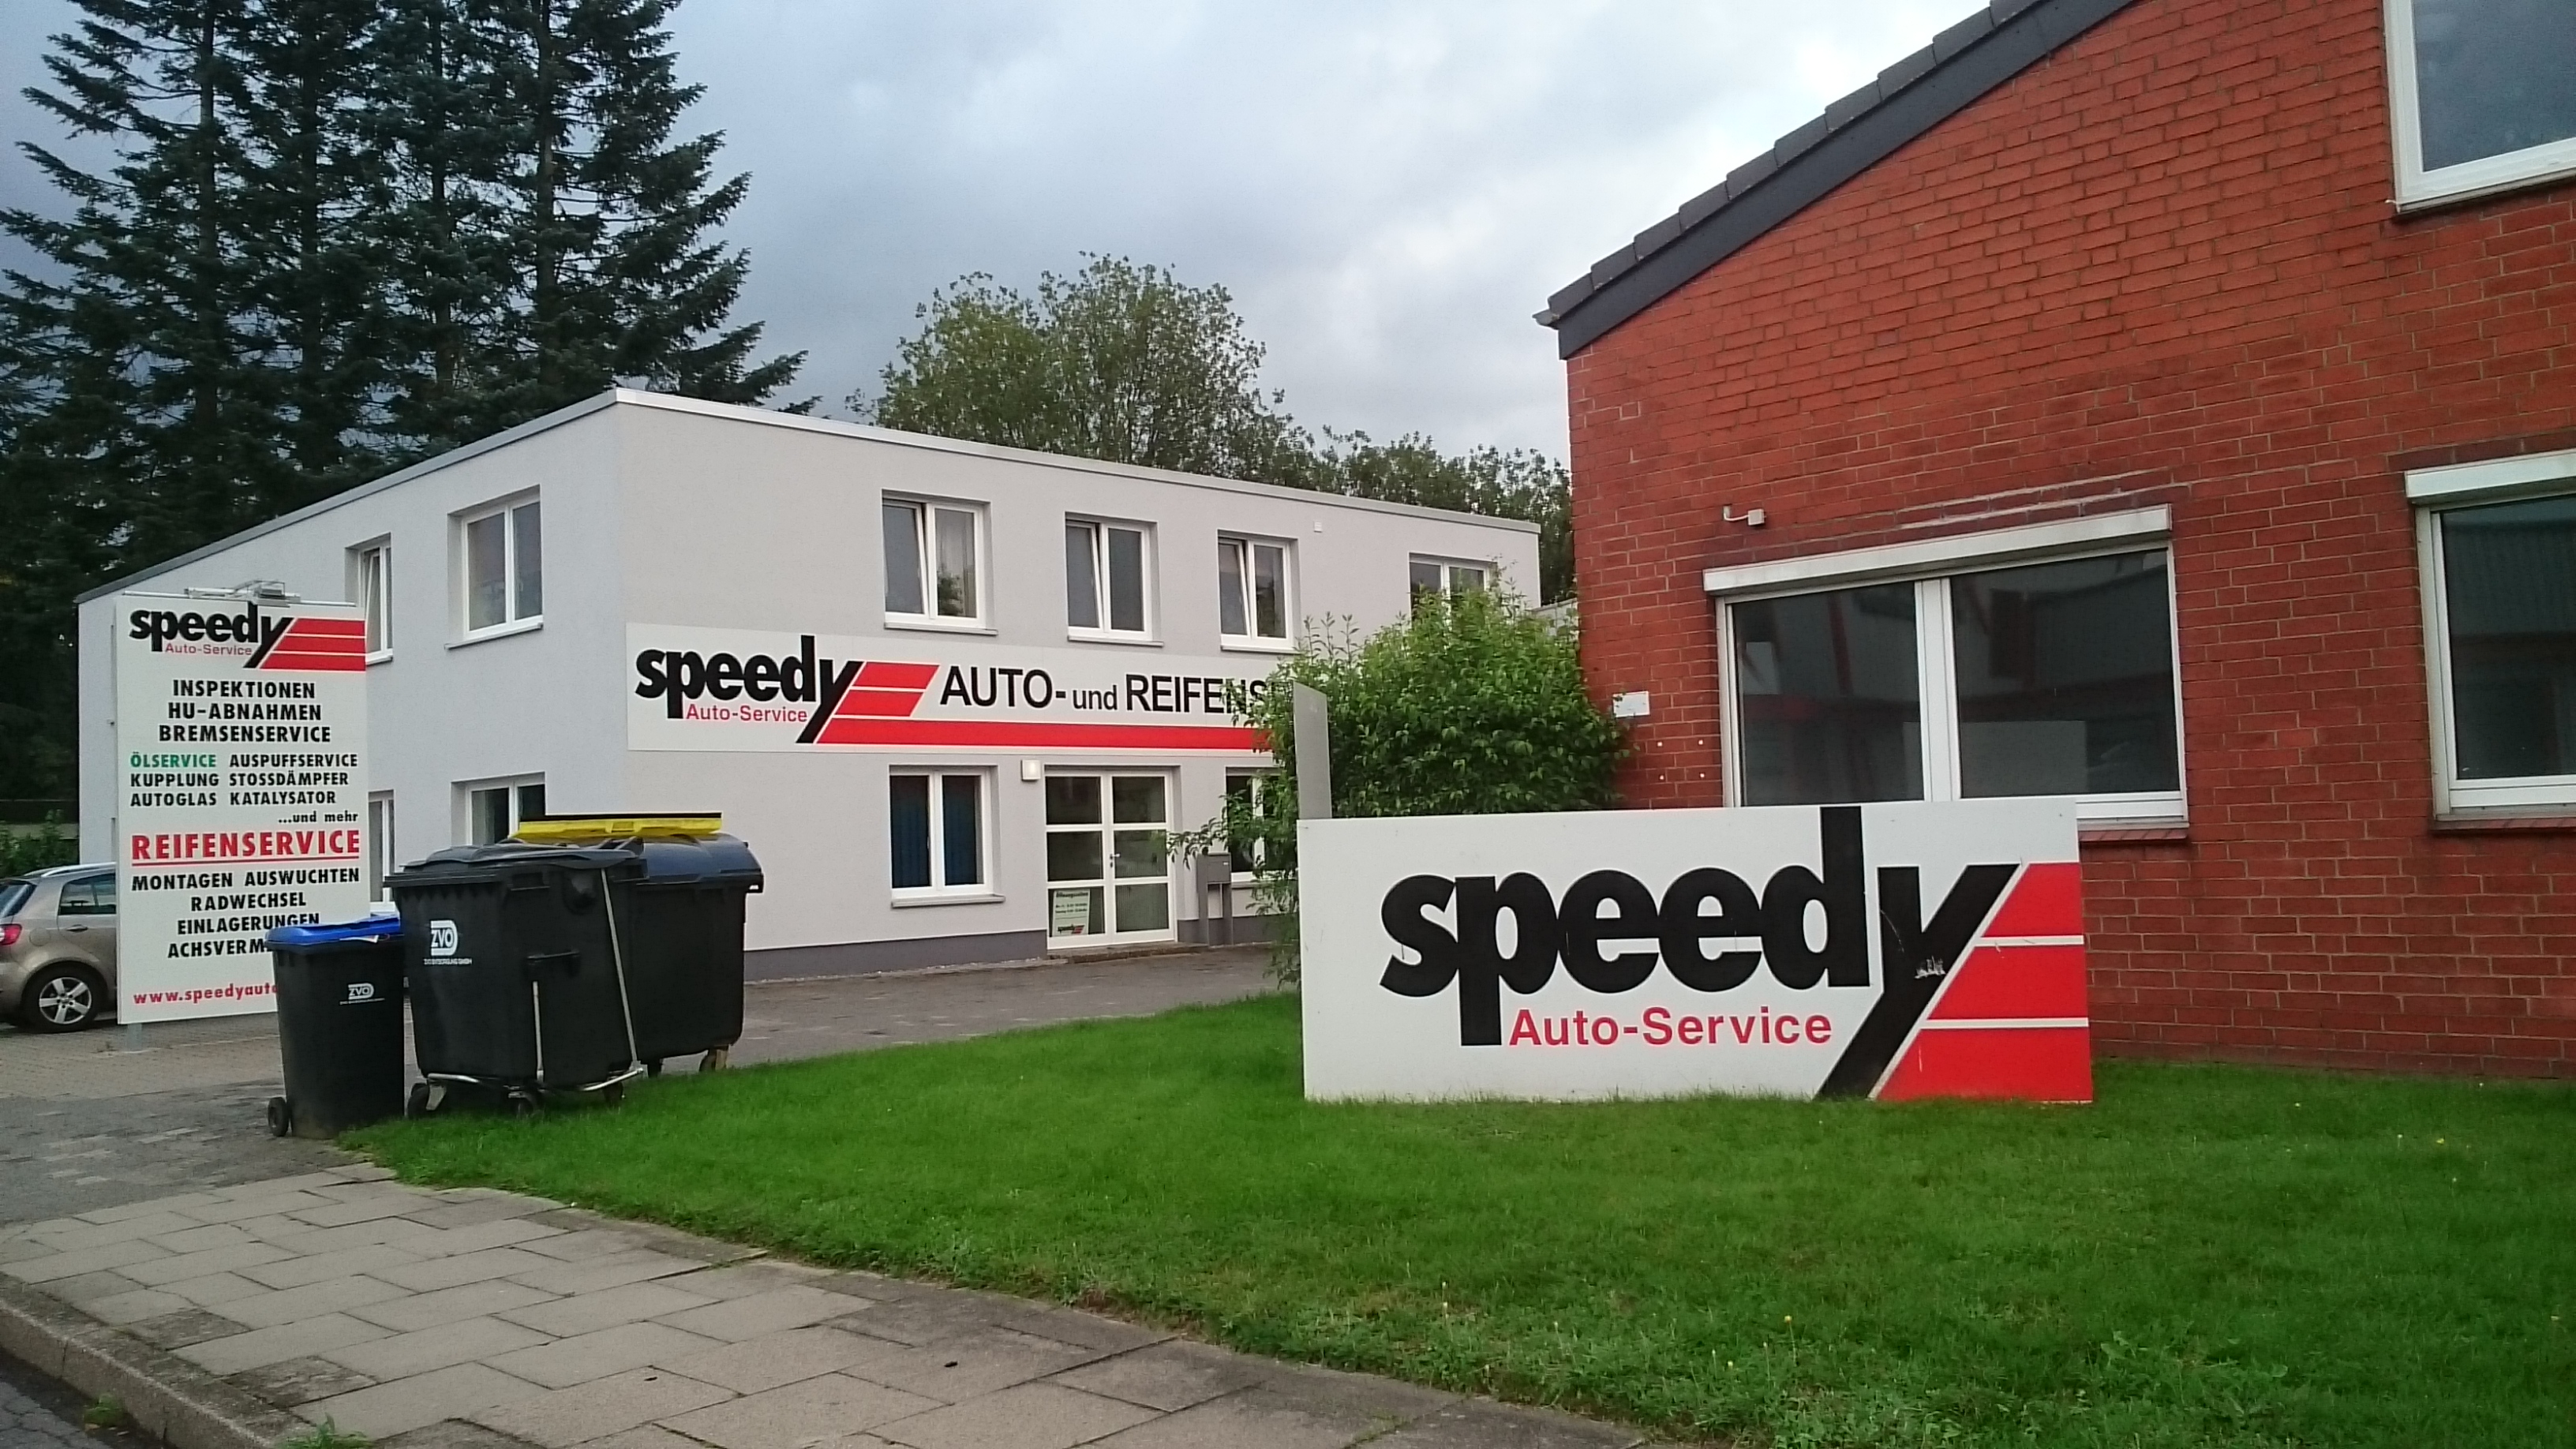 Speedy Auto-Service GmbH & Co. KG in 23611 Bad Schwartau